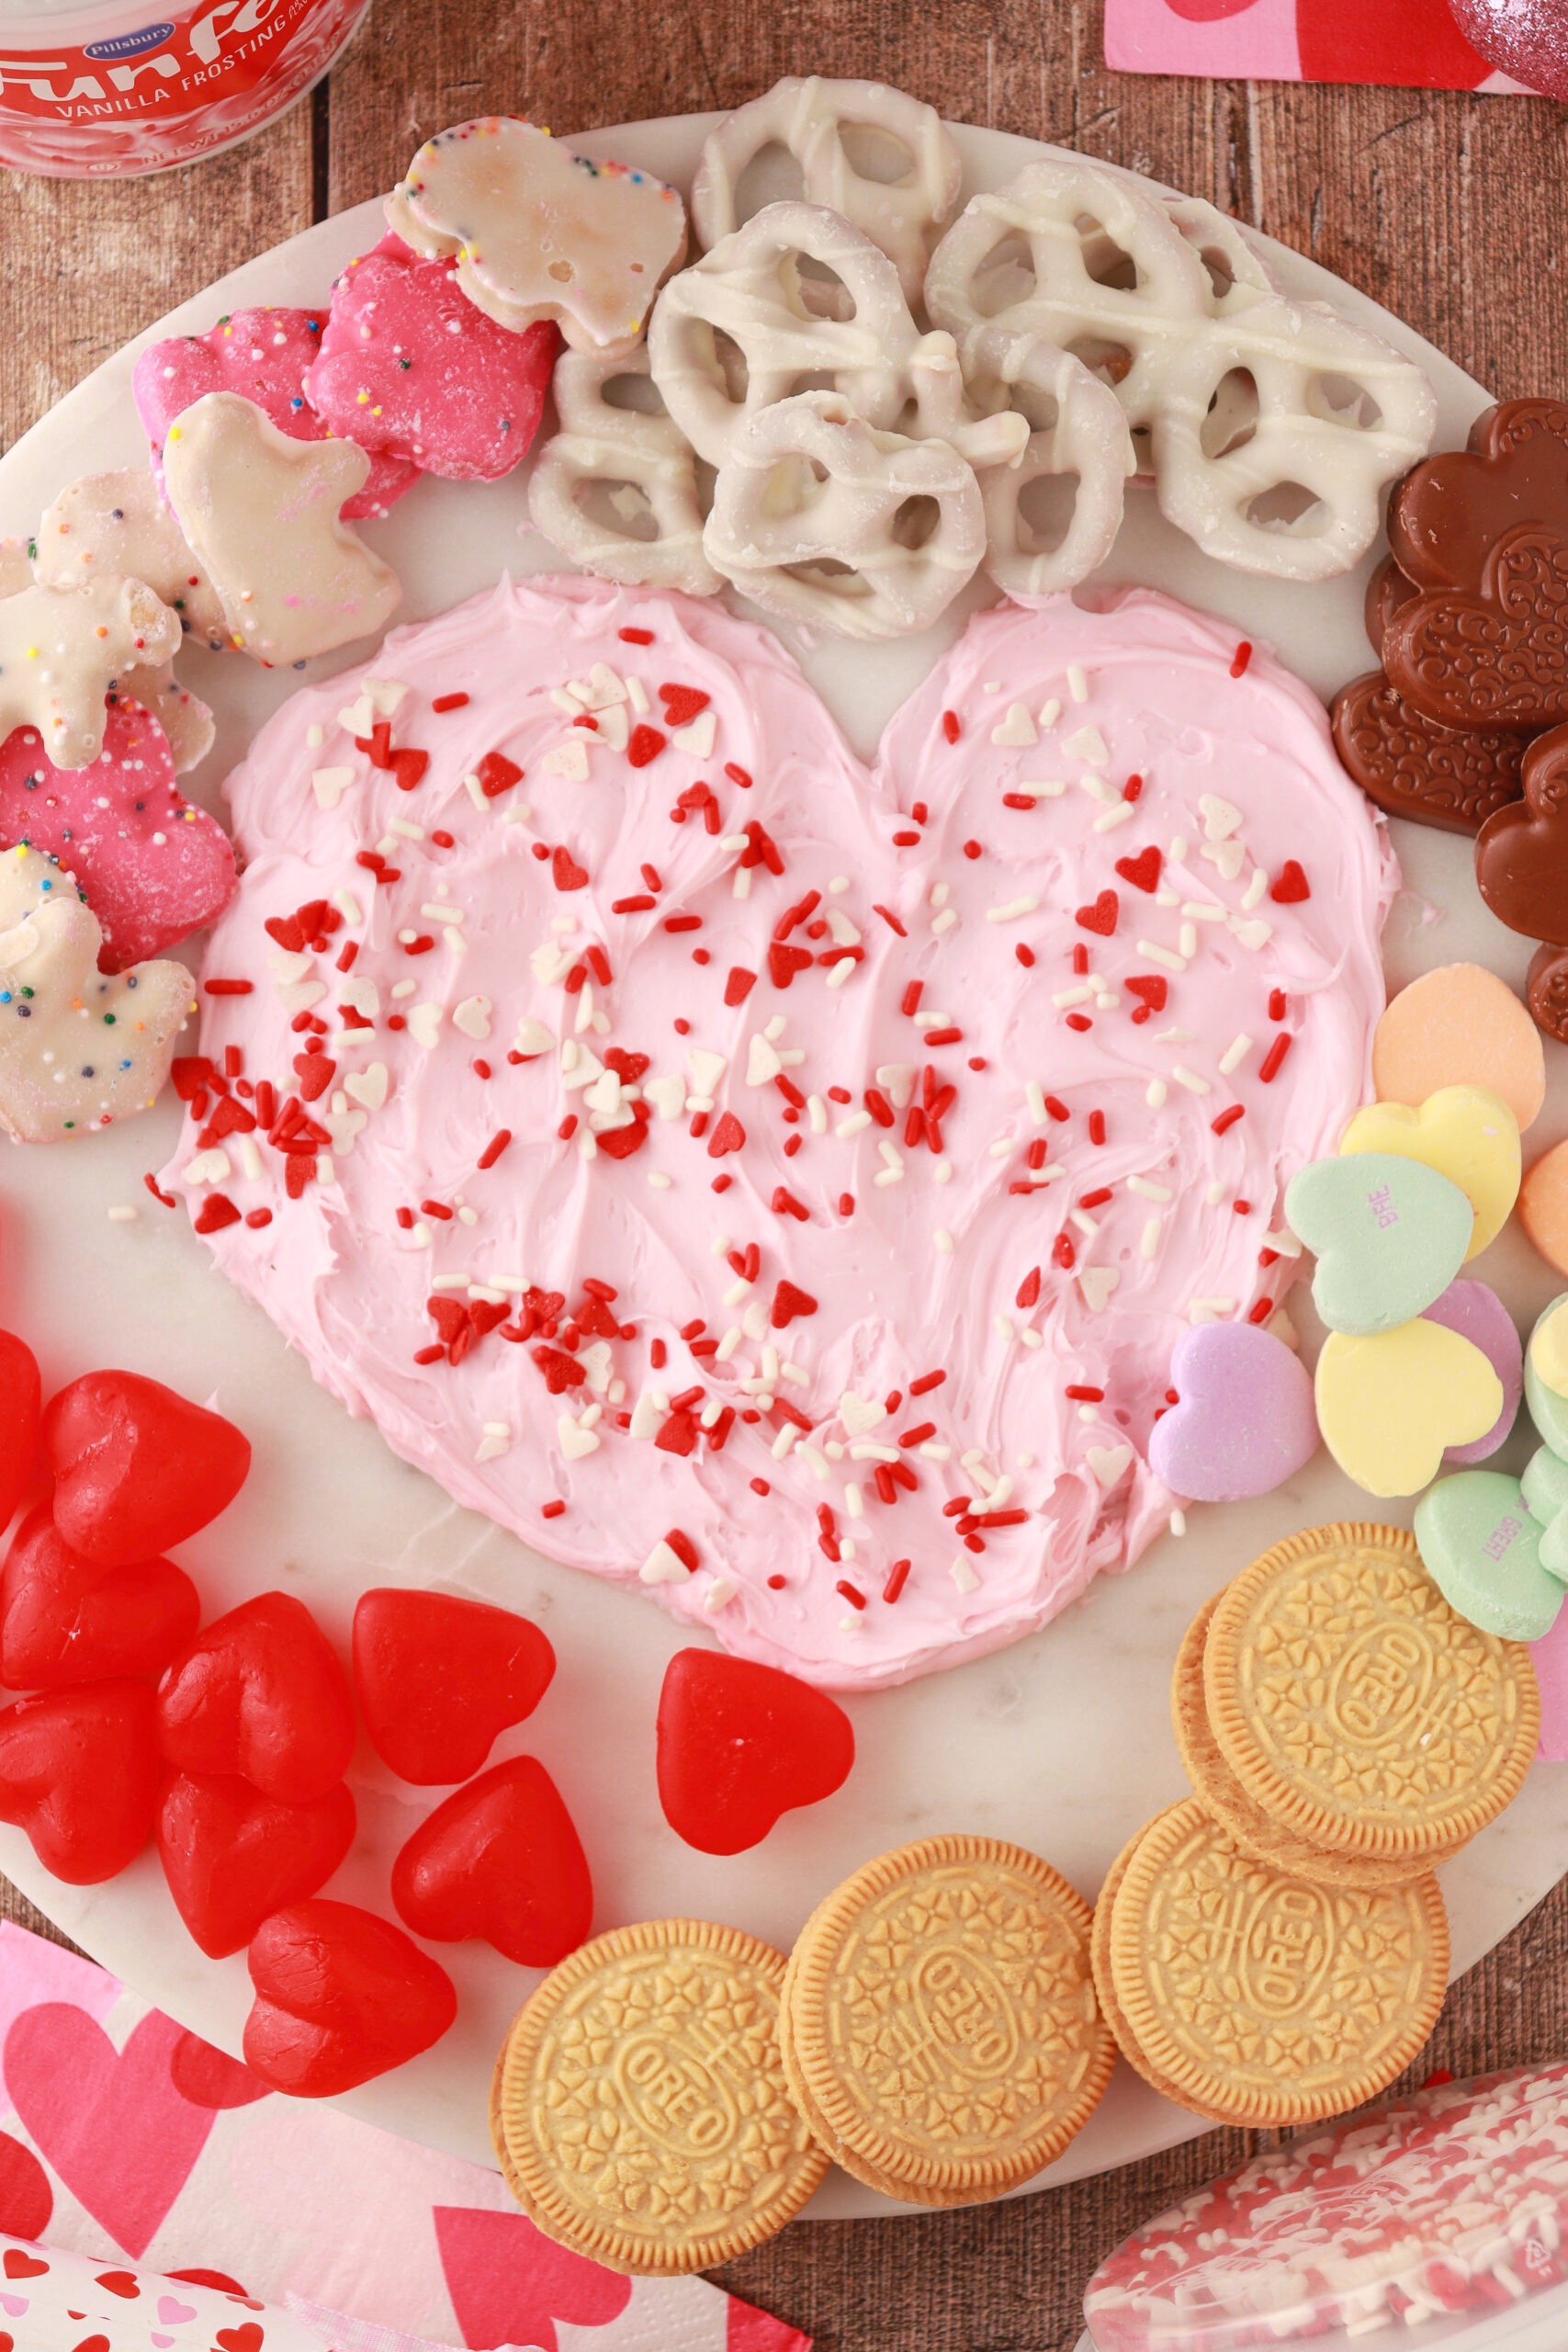 Funfetti® Valentine's Day Frosting Board Recipe